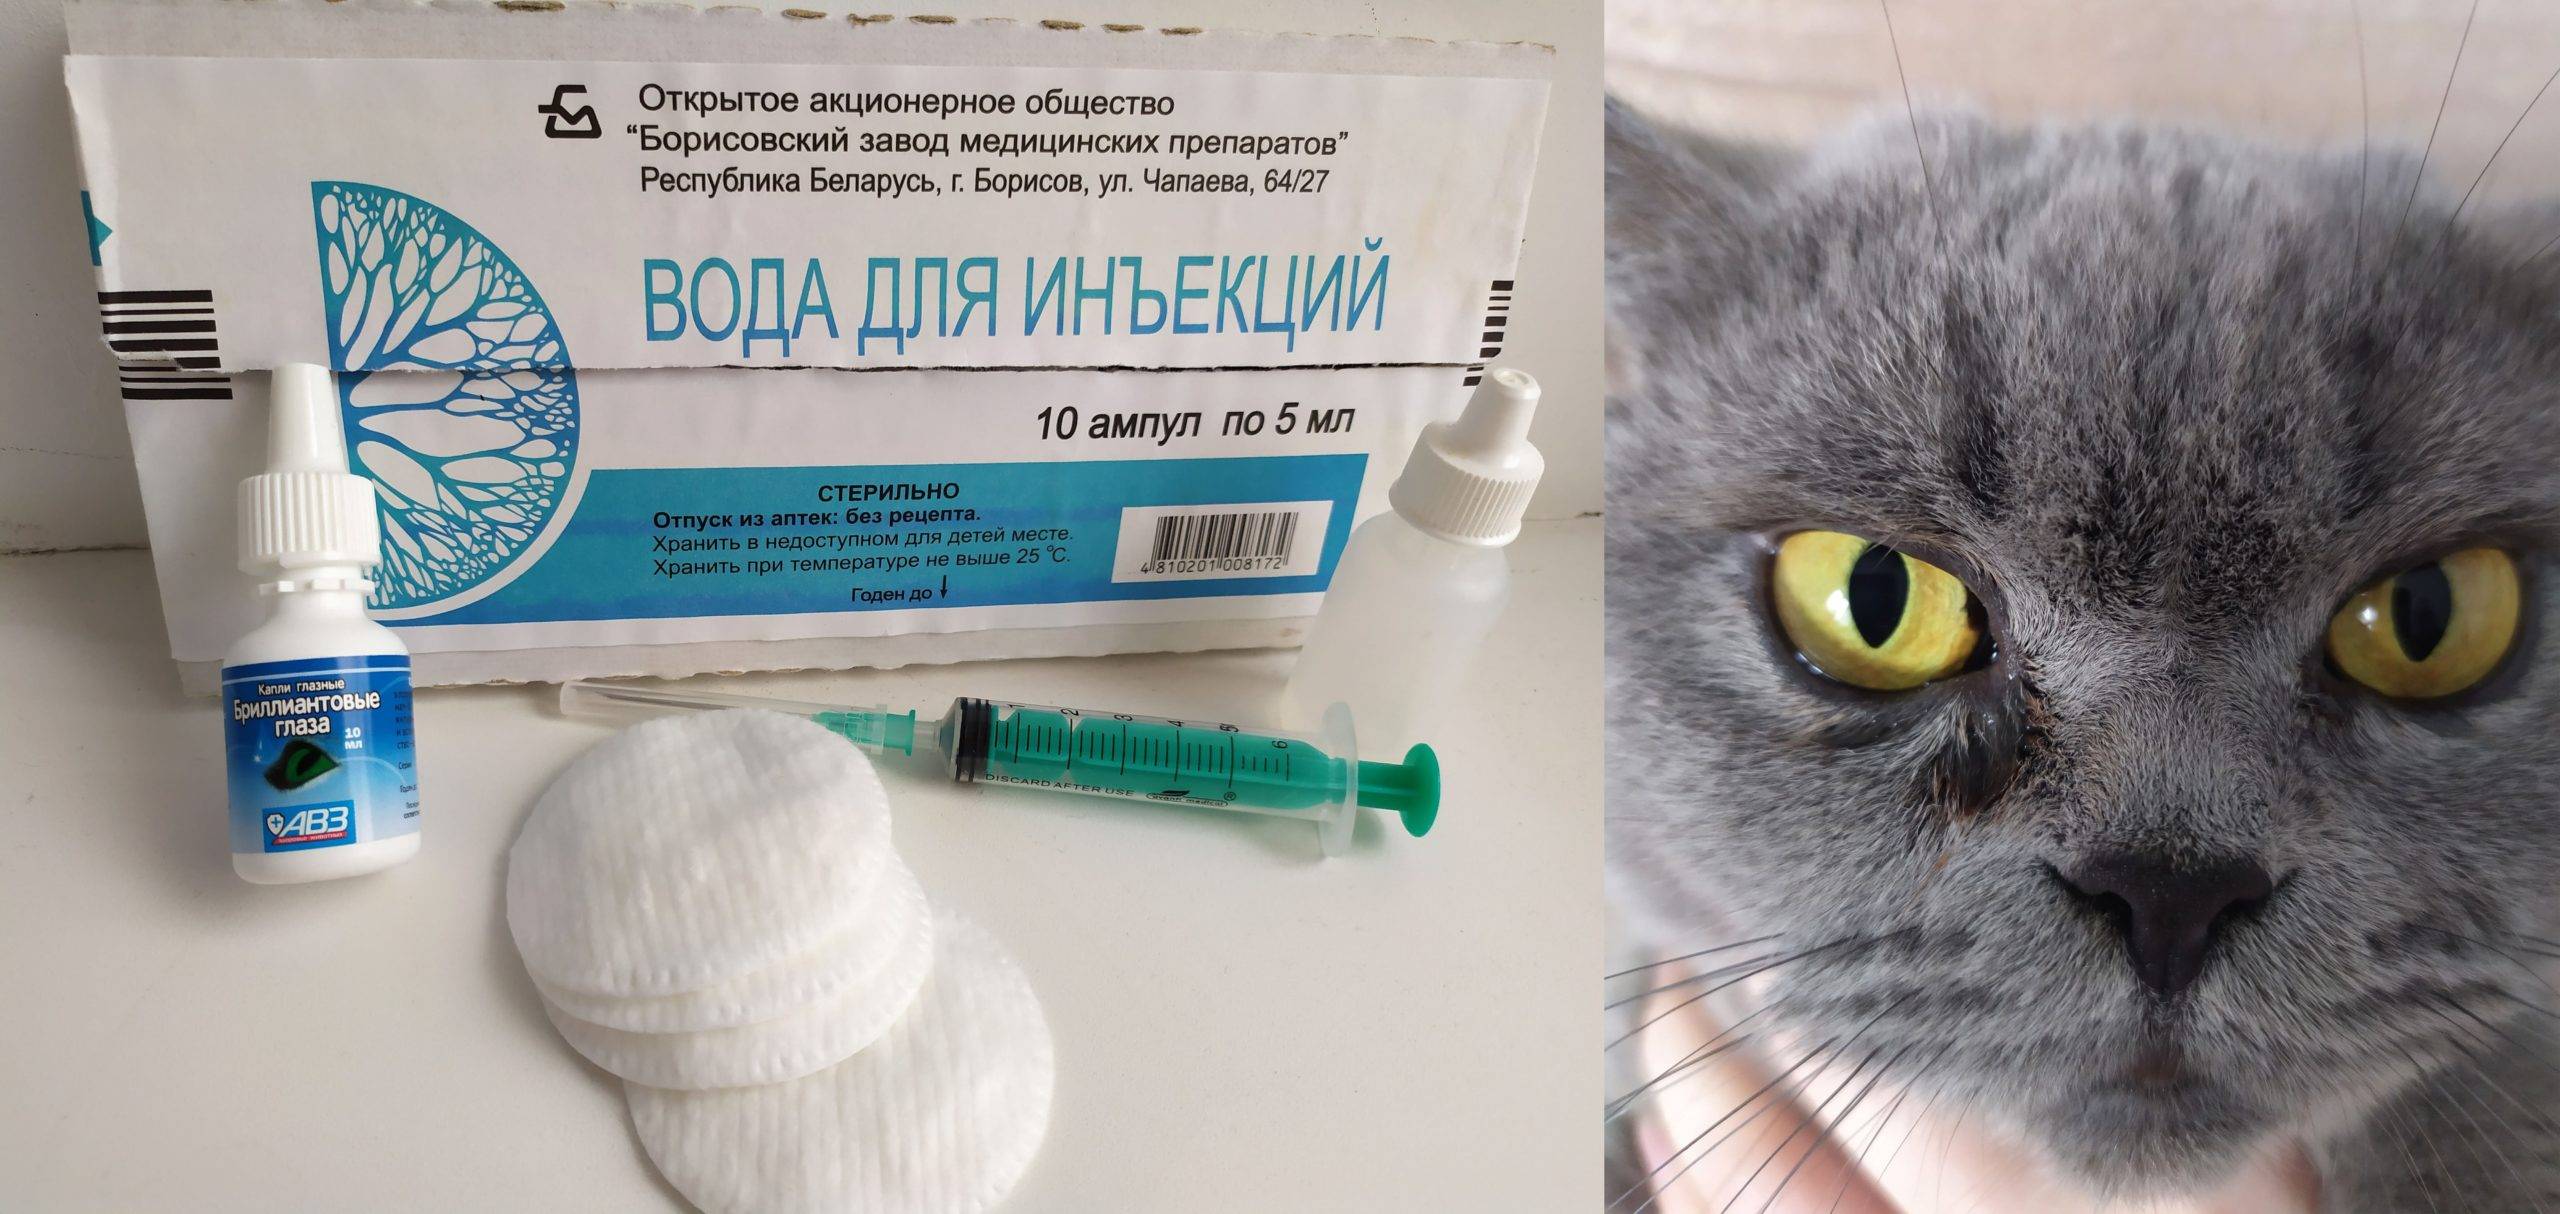 Котенок чихает и слезятся глаза - причины и лечение